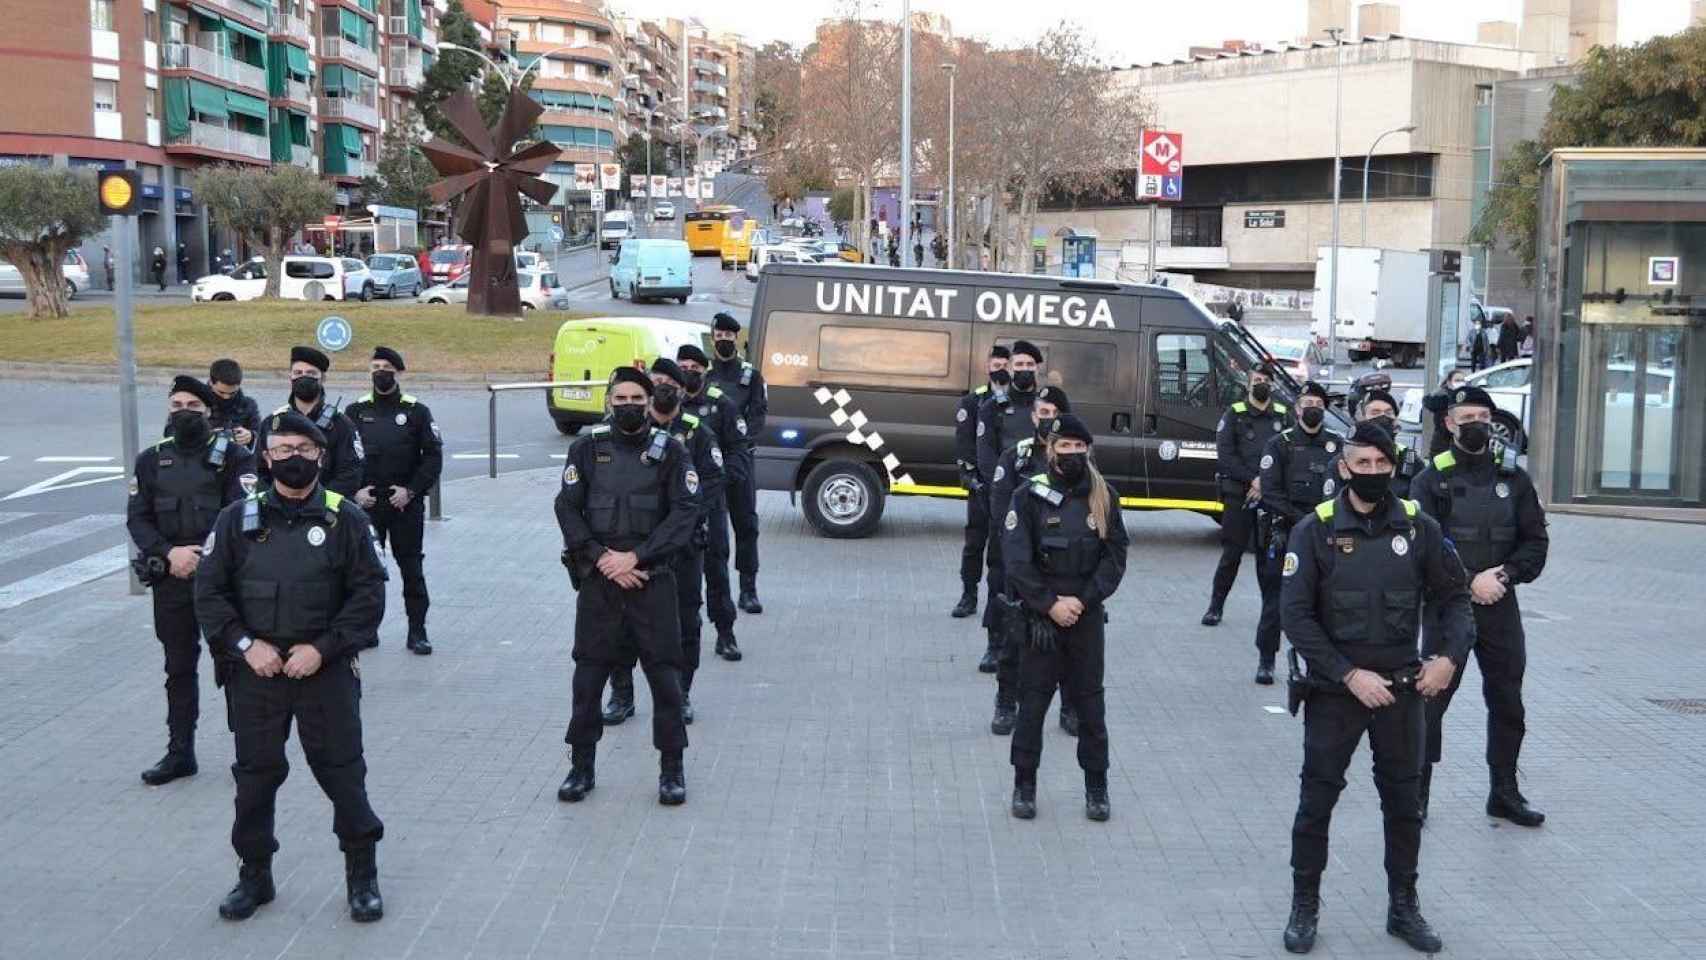 La Unidad Omega de Badalona, que ha frustrado una okupación y ha detenido a los delincuentes / TWITTER - @Albiol_XG